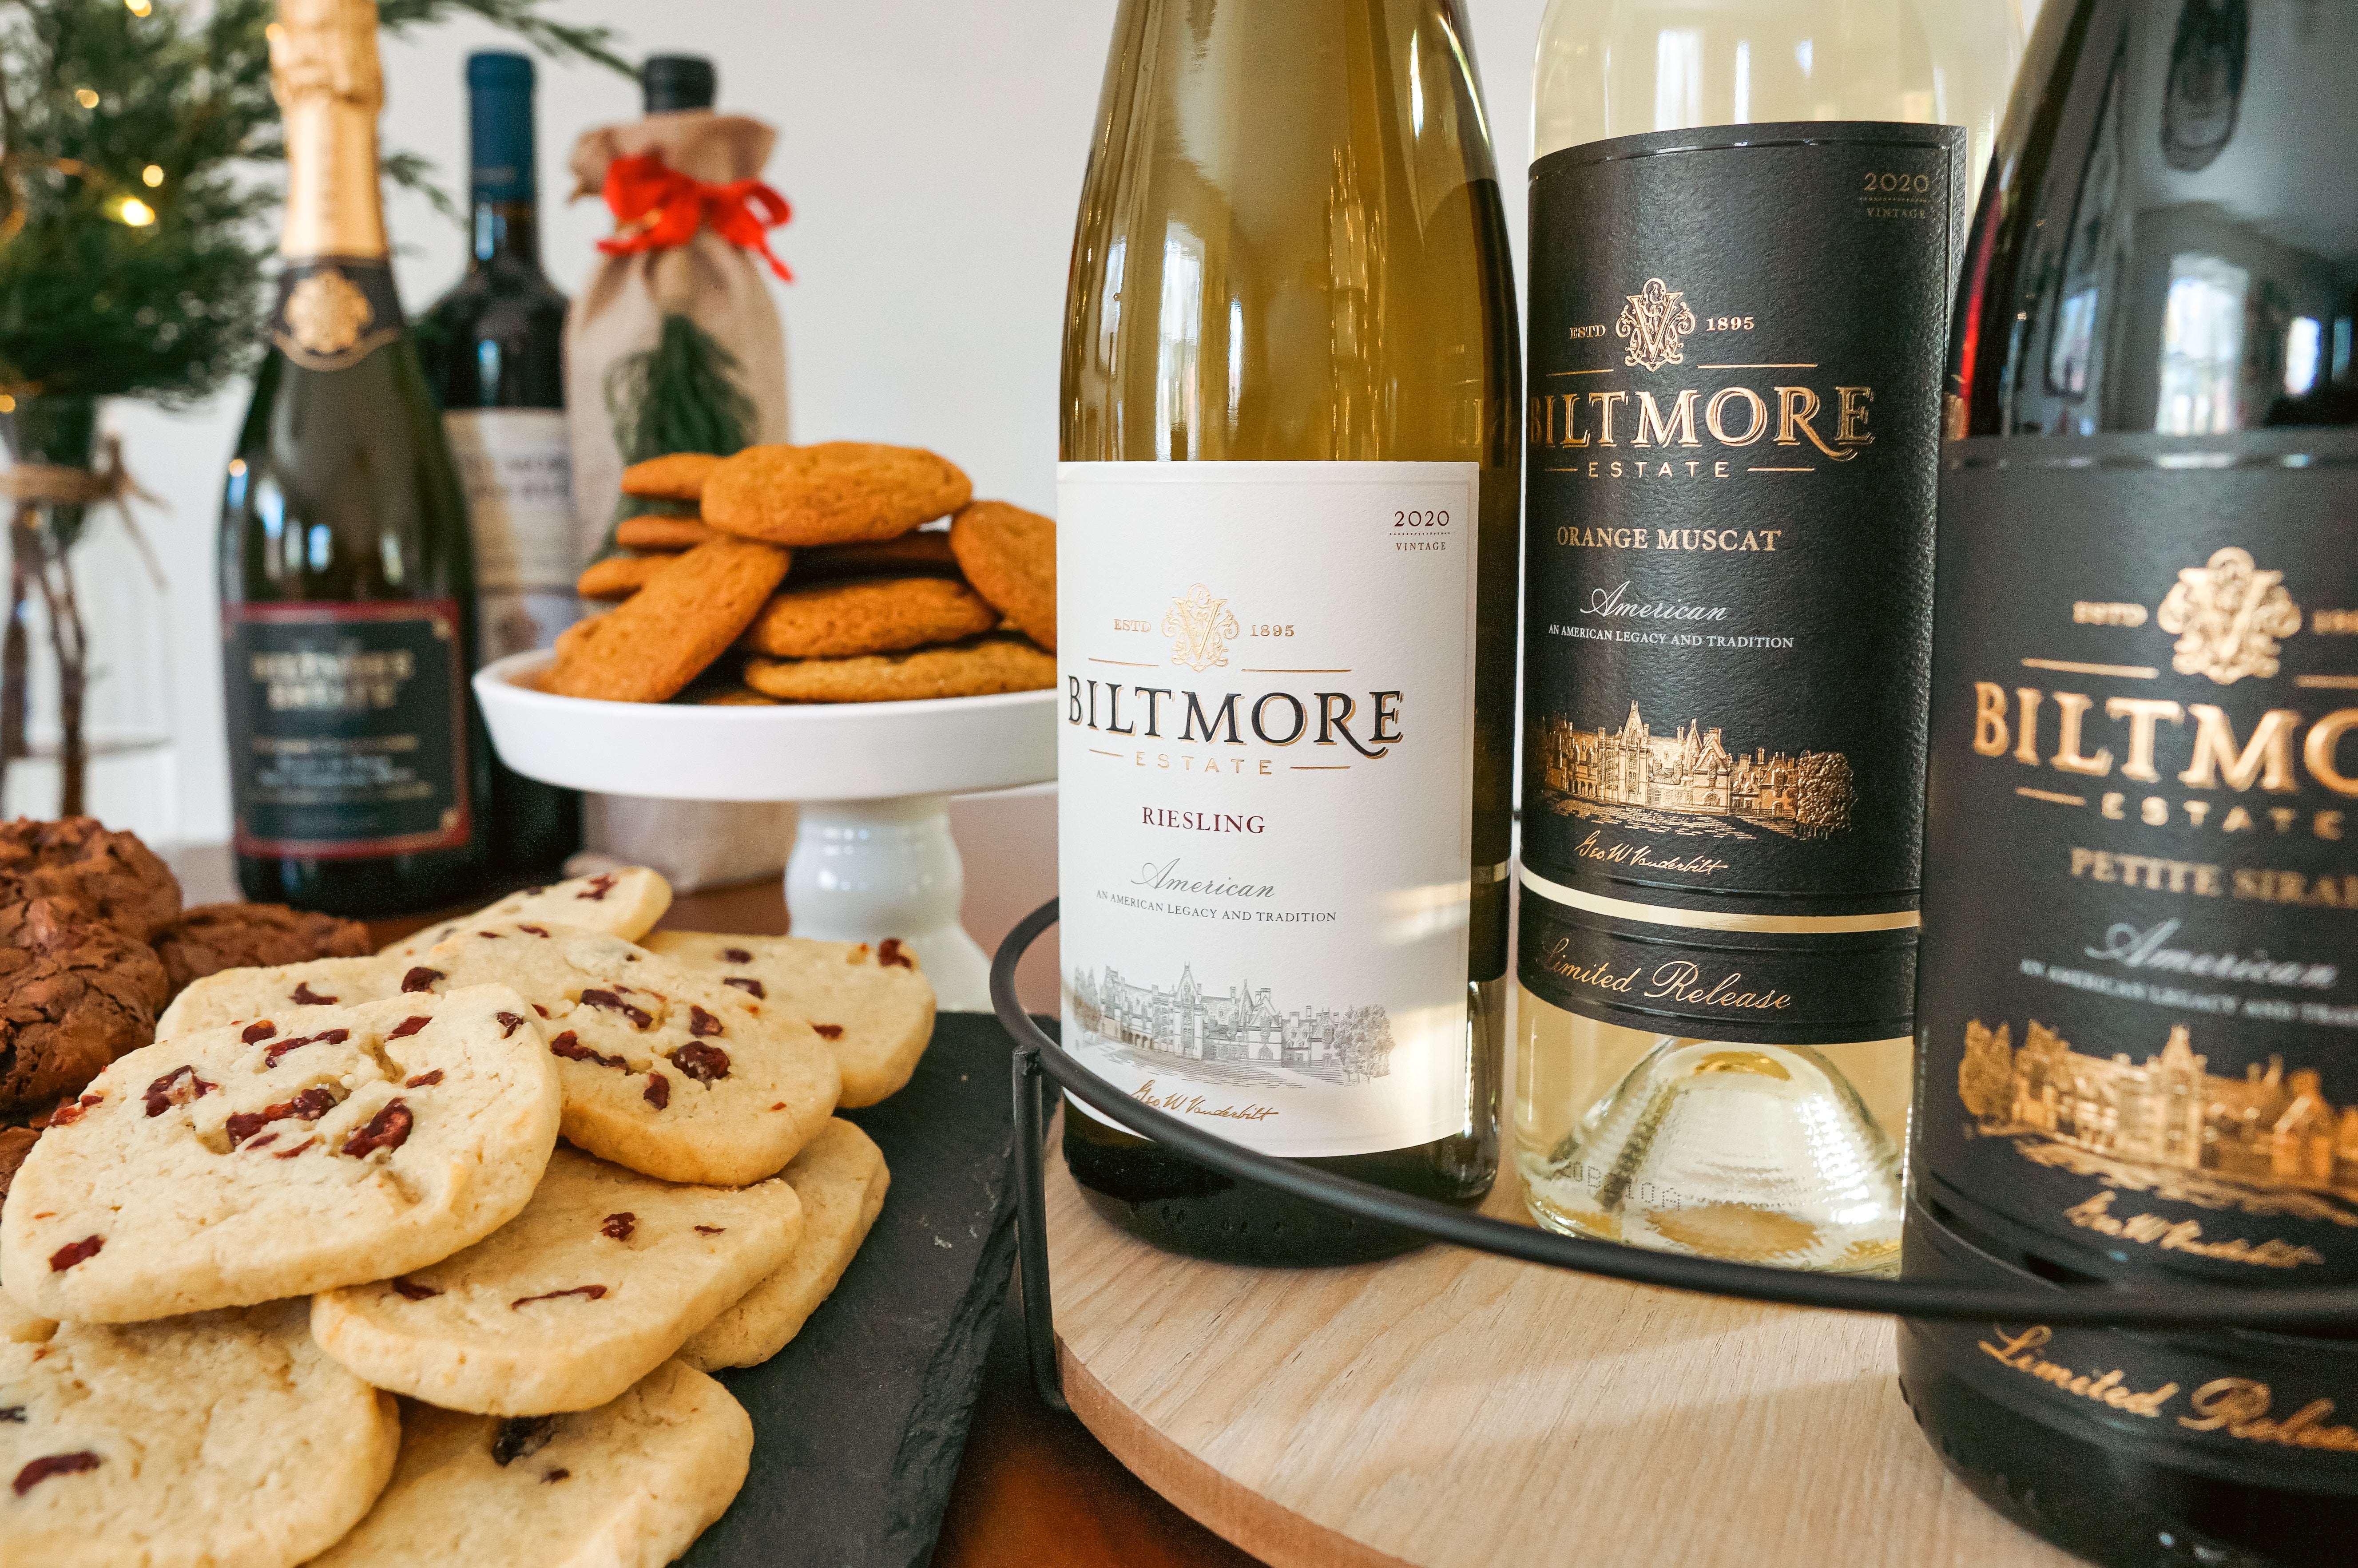 Biltmore wines and cookies